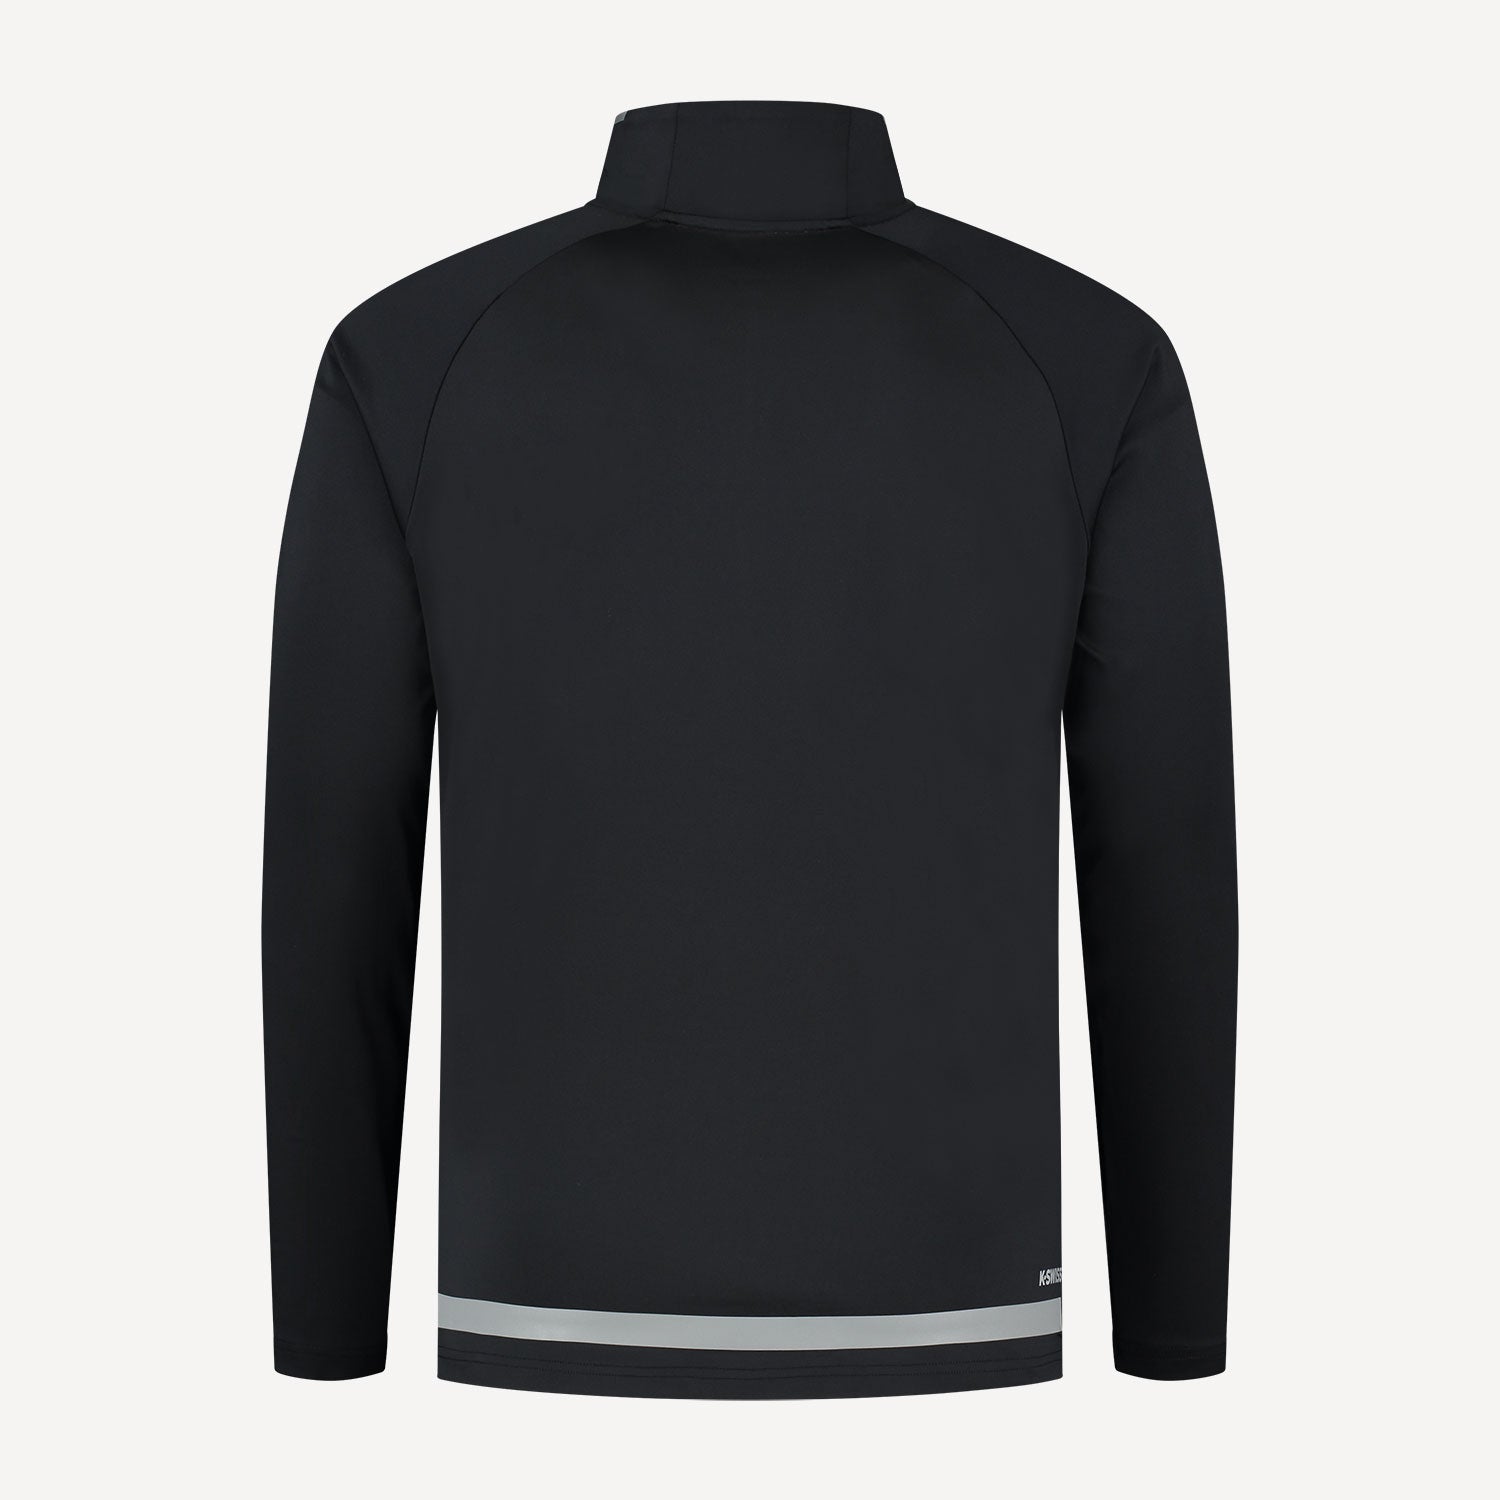 K-Swiss Hypercourt Men's Long-Sleeve Tennis Shirt Black (2)